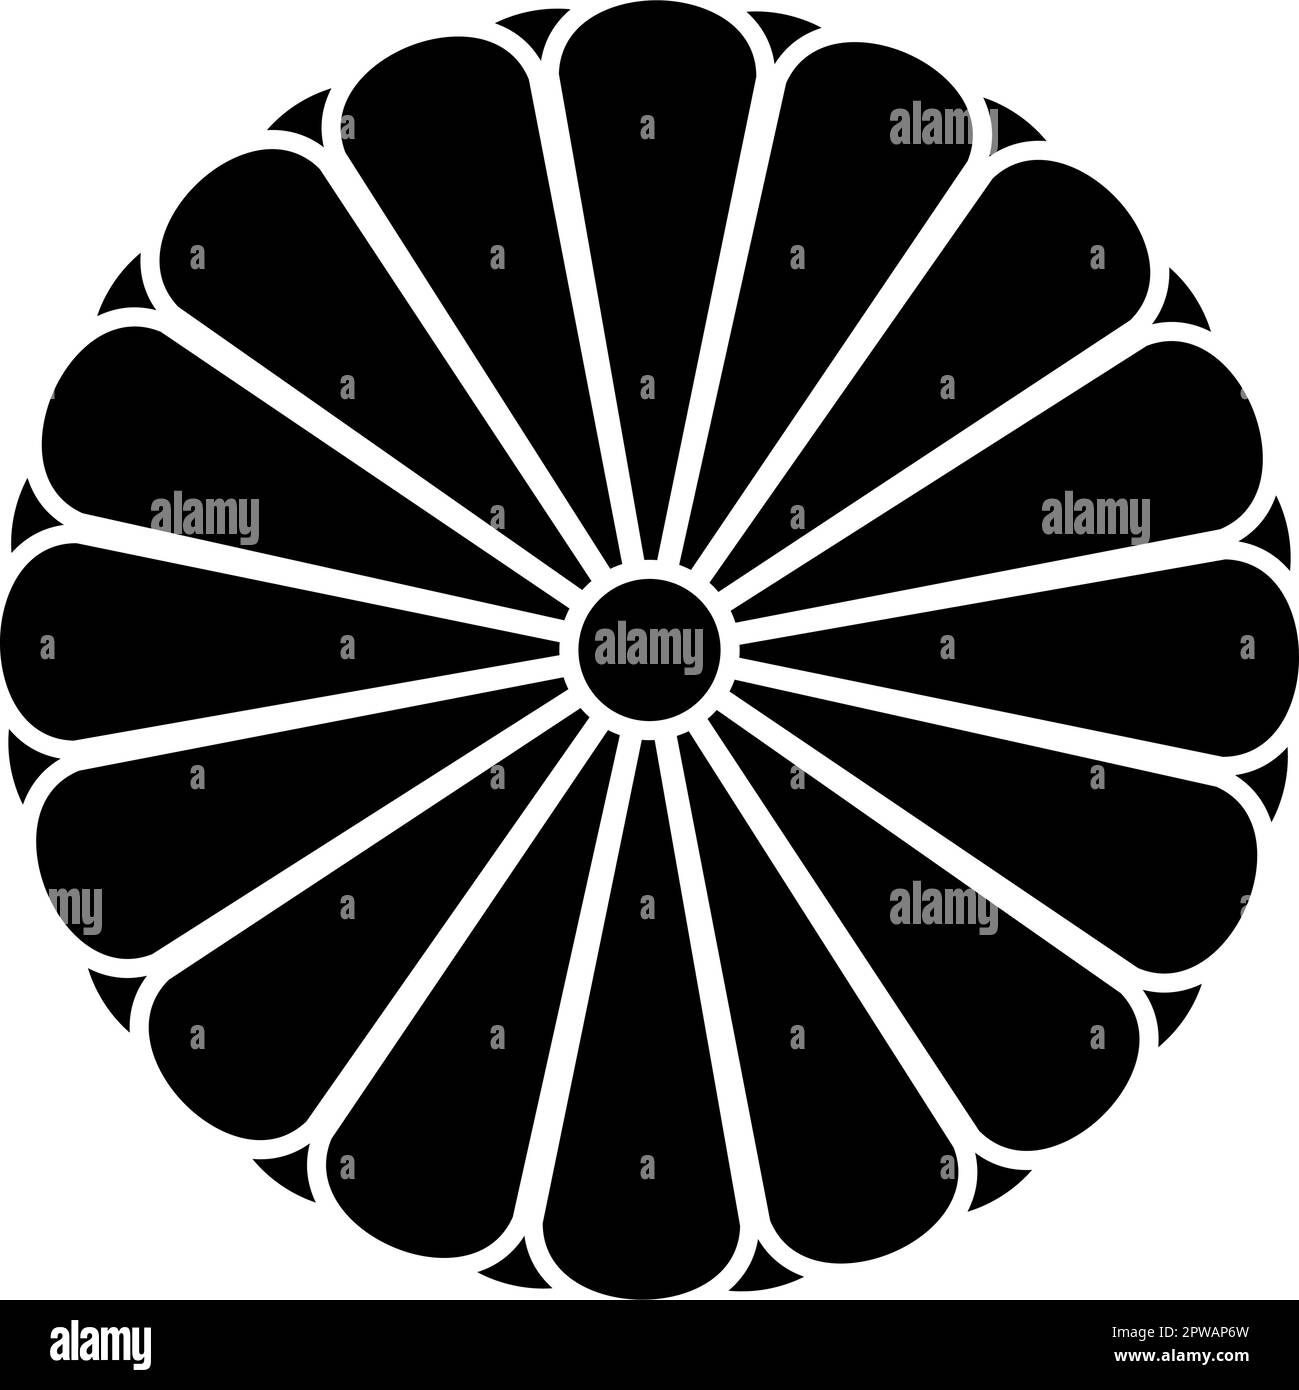 Blason de Japan nippon Imperial Seal disque central avec 16 pétales emblème national icône couleur noire illustration vectorielle style plat Illustration de Vecteur